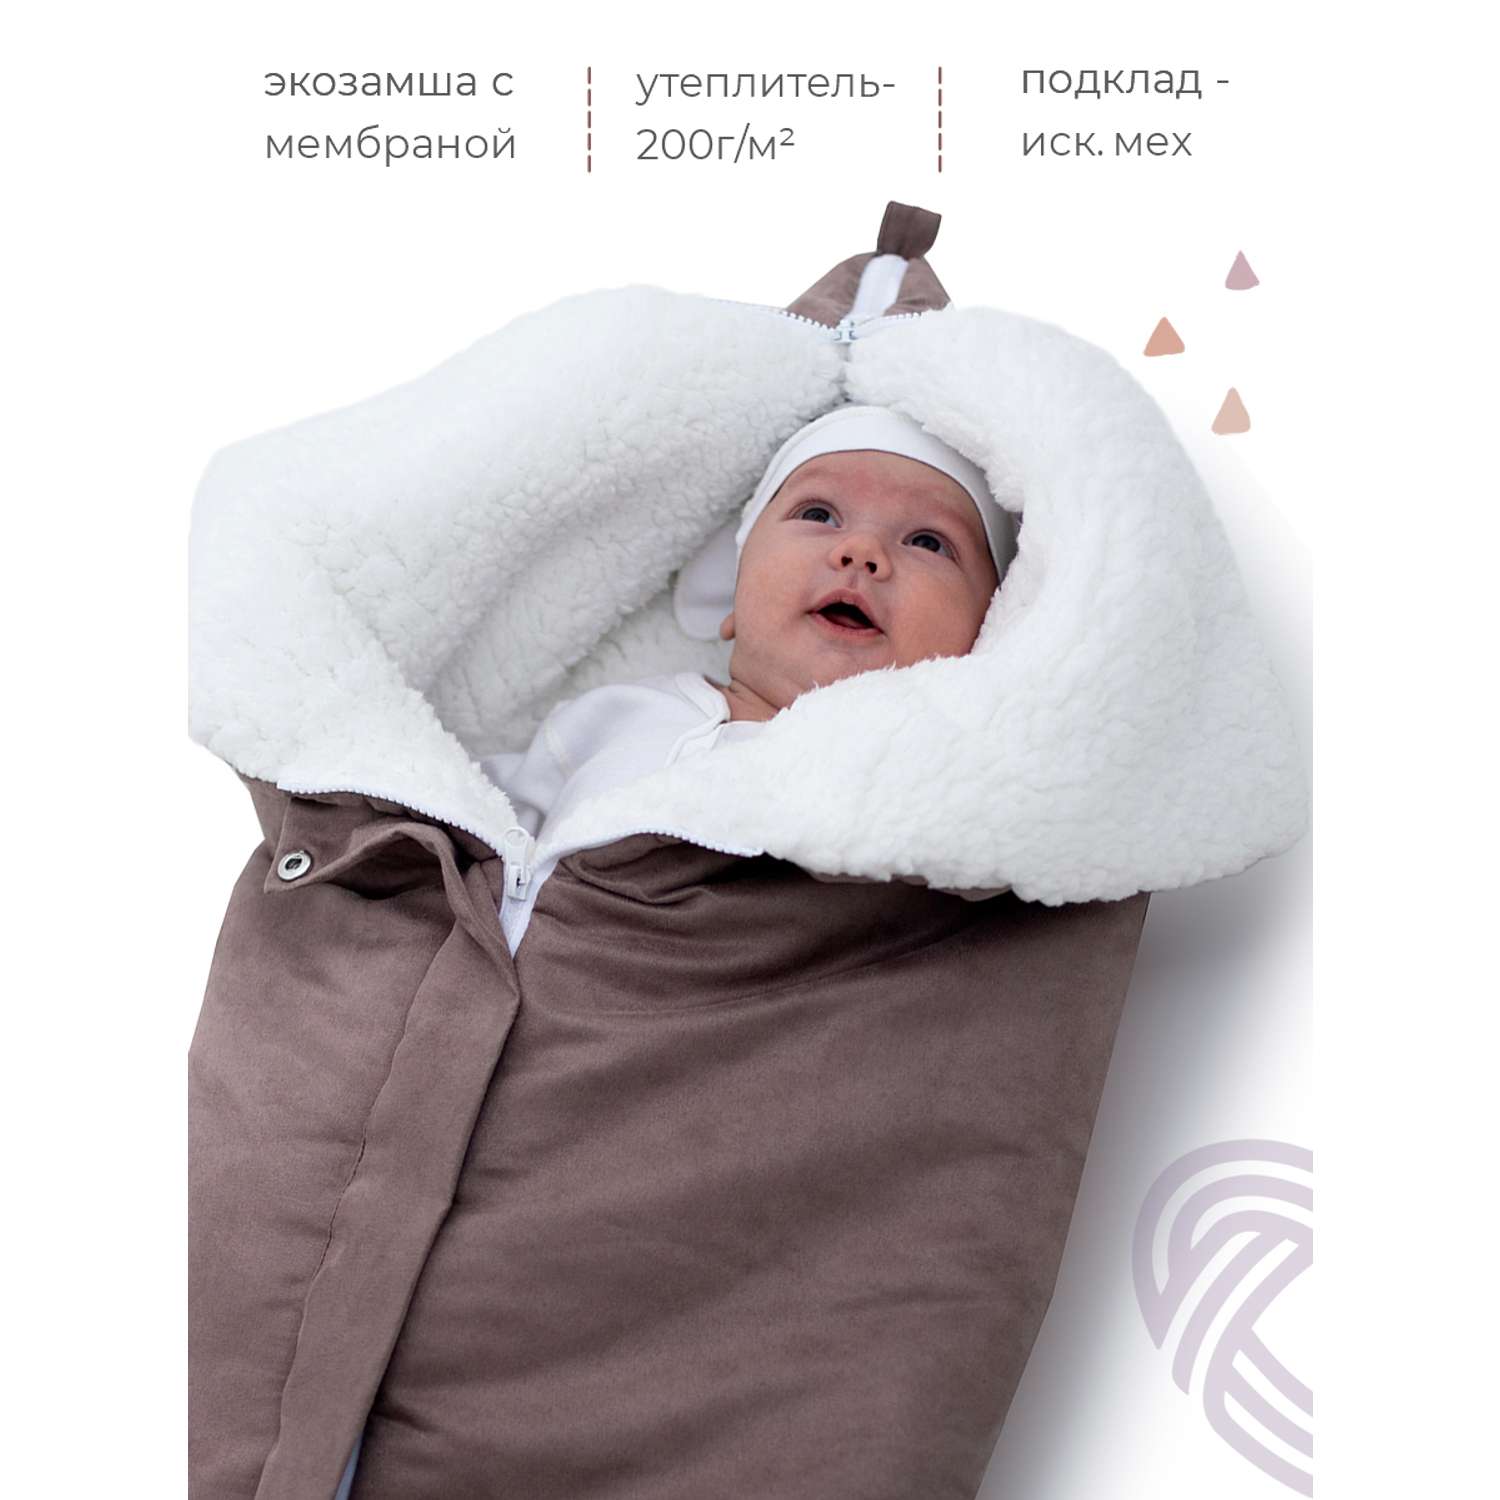 Конверт в коляску inlovery для новорожденного «Нортес» капучино - фото 3